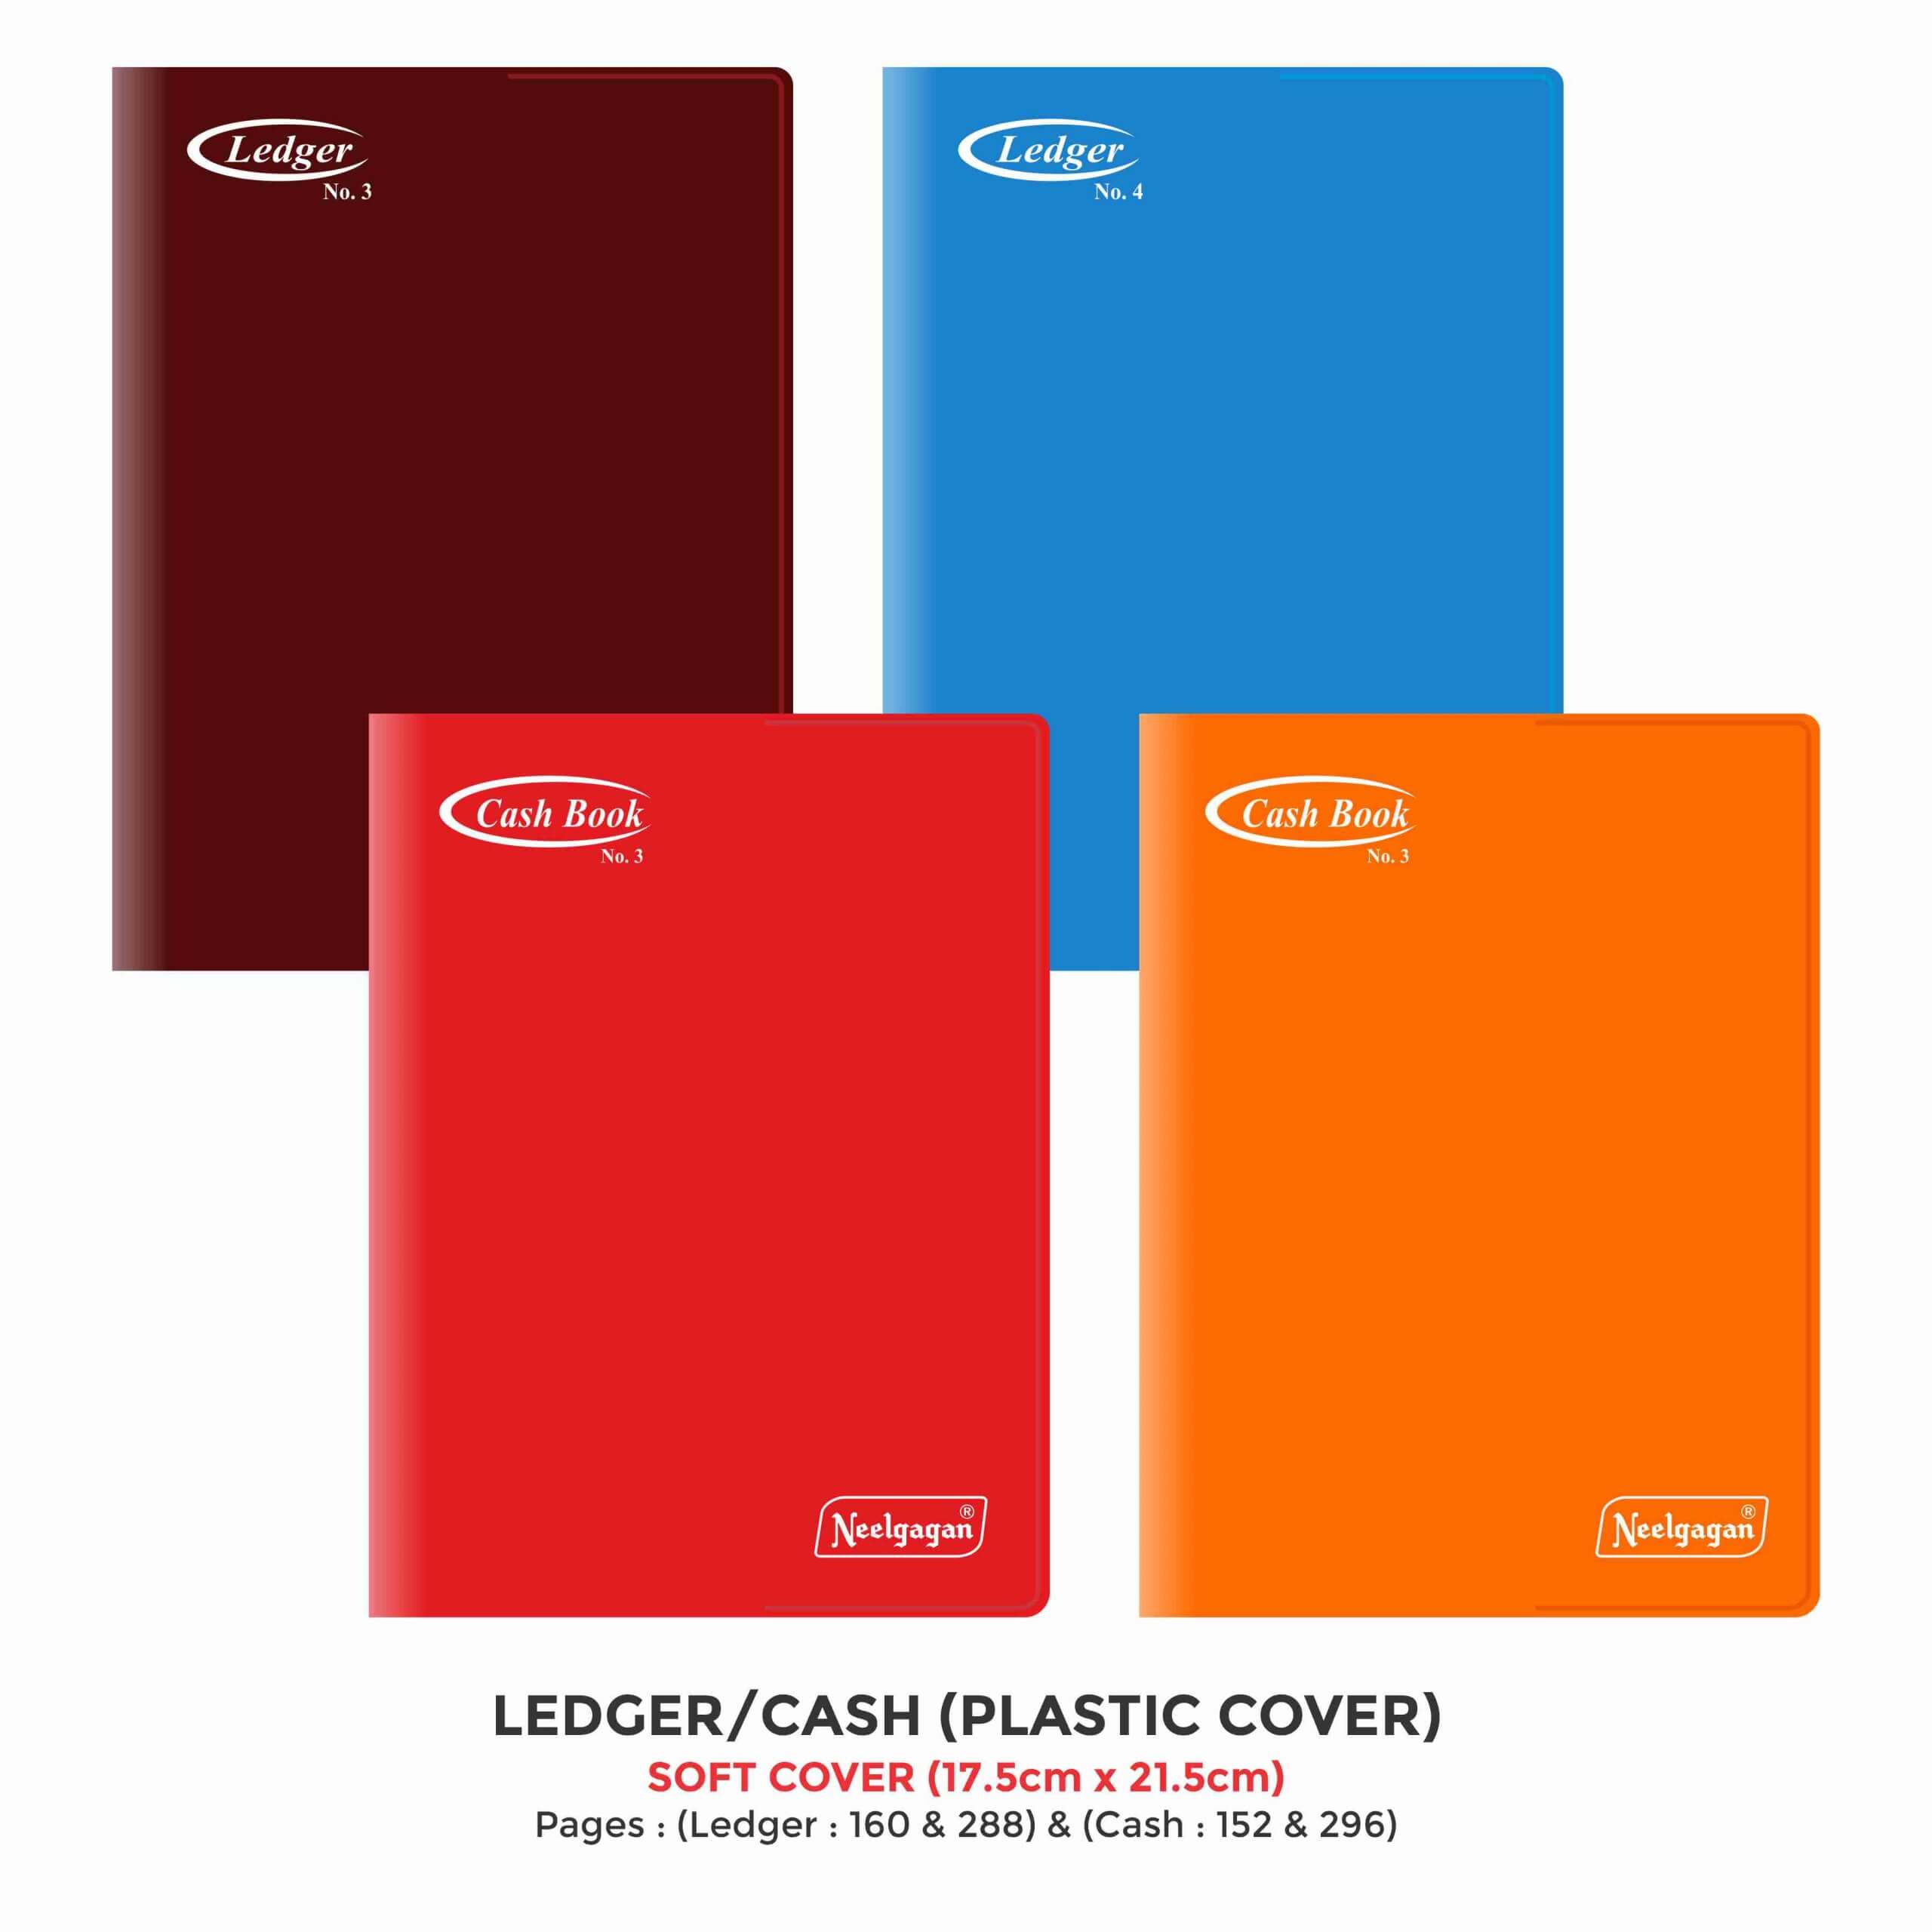 Cash Book / Ledger - Copy Size (No. 3,4), (17.5 x 21.5cm) Soft Cover Plastic (PVC)